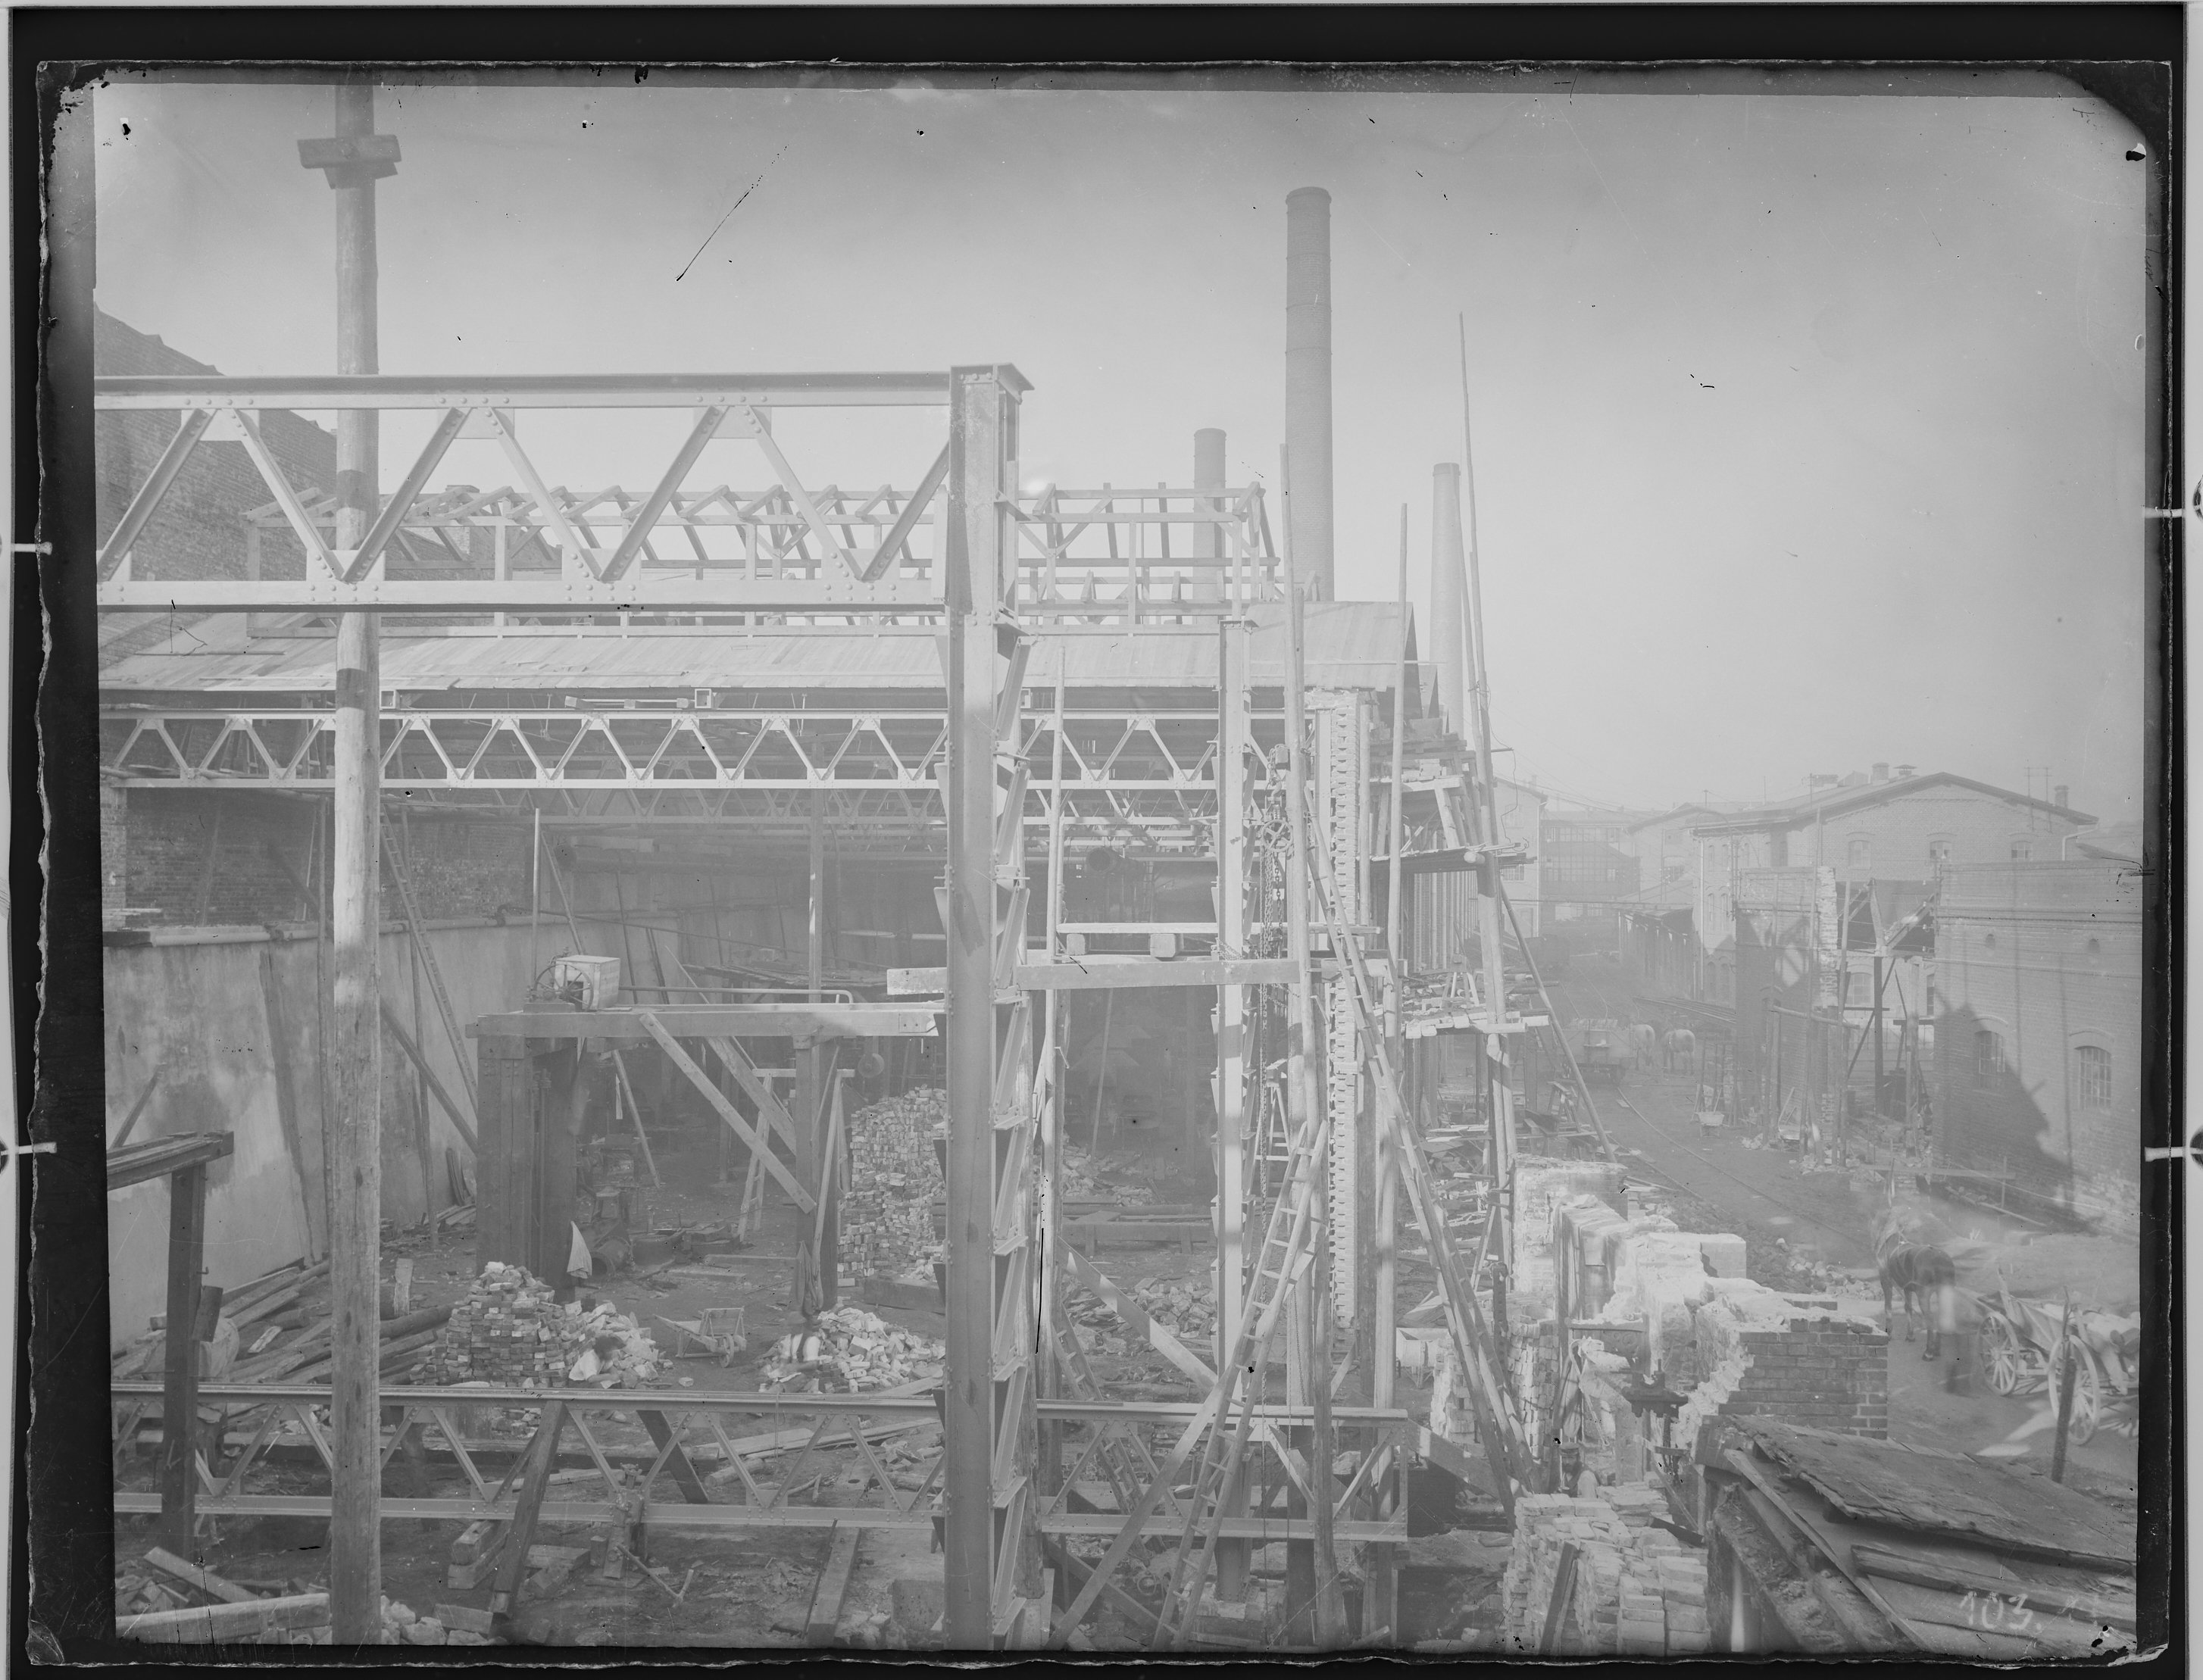 Fotografie: AG für Fabrikation von Eisenbahn-Material zu Görlitz (Außenansicht), Werkhalle im Bau, um 1905? (Verkehrsmuseum Dresden CC BY-NC-SA)